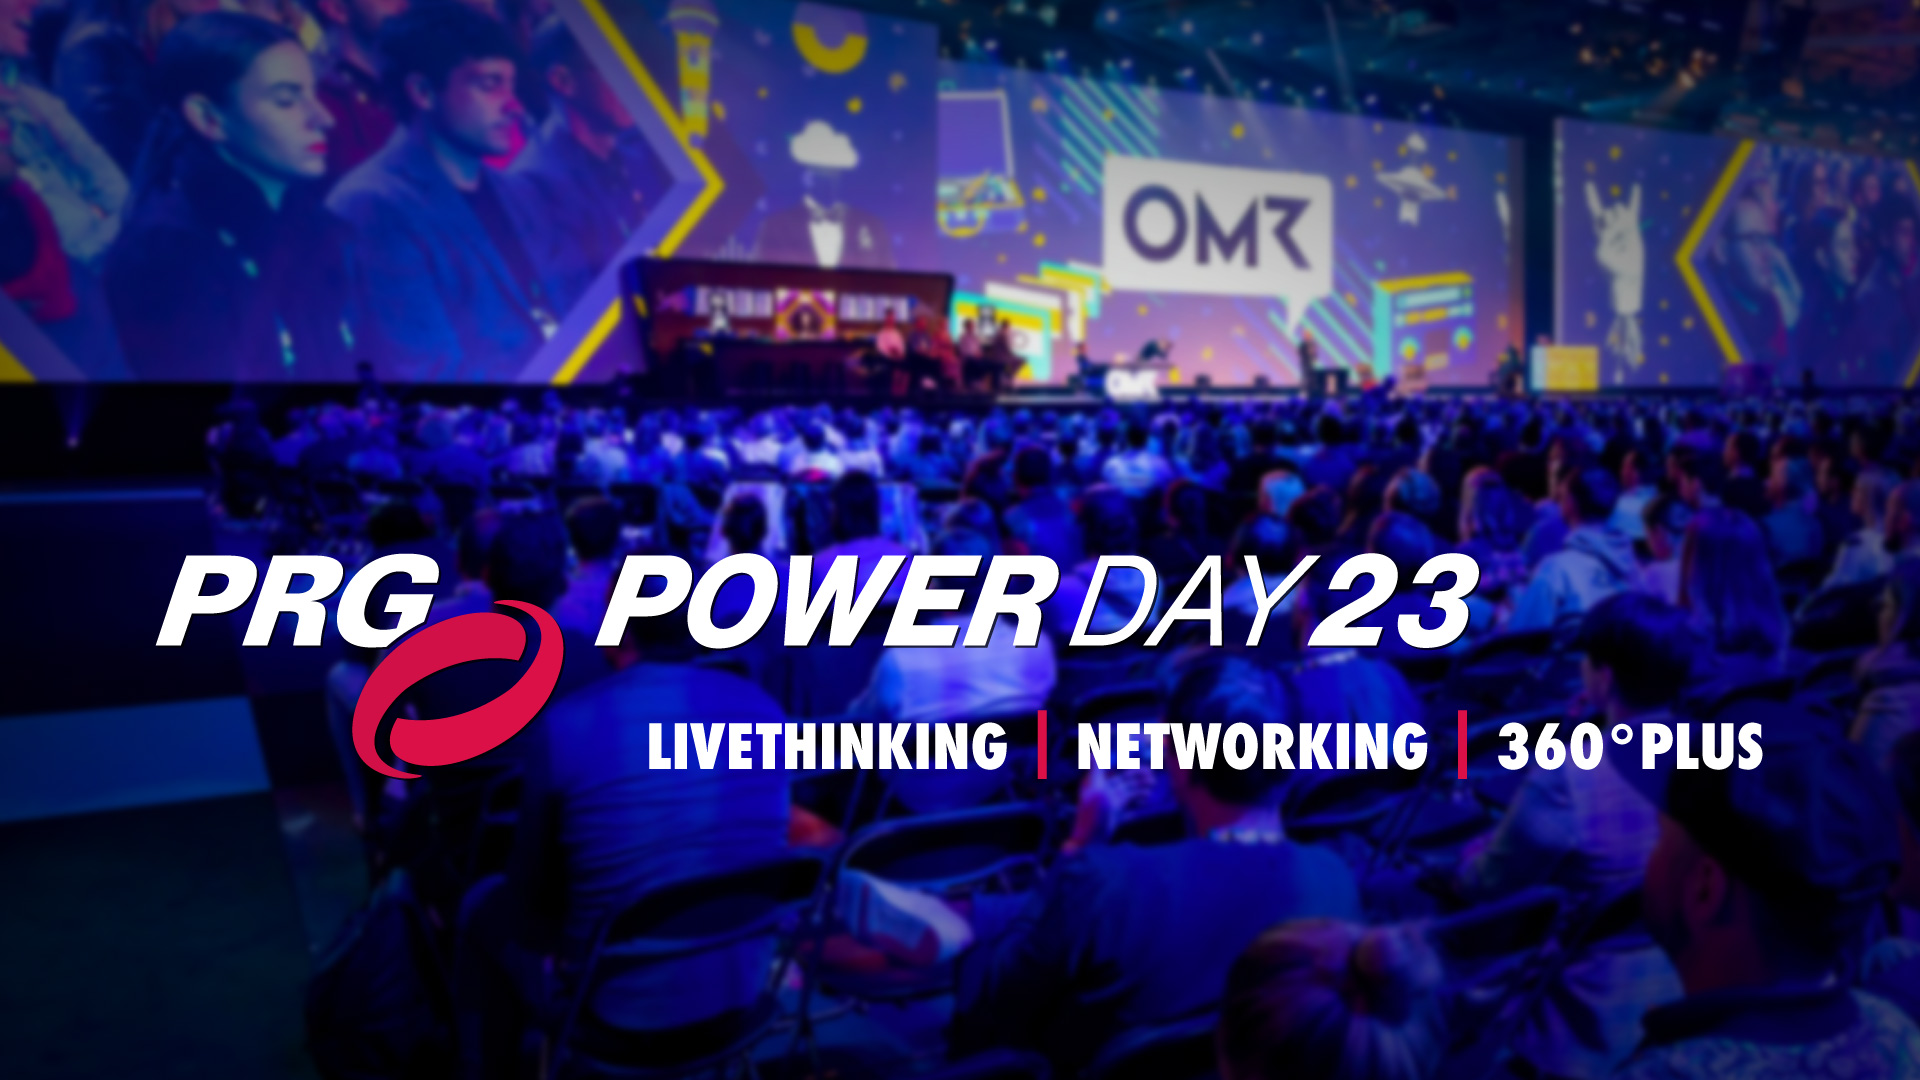 Le premier PRG Powerday 2023 a eu lieu à Cologne le 19 juin 2023 et a inspiré les invités avec un programme diversifié centré sur la réflexion en direct, le réseautage et 360° Plus.